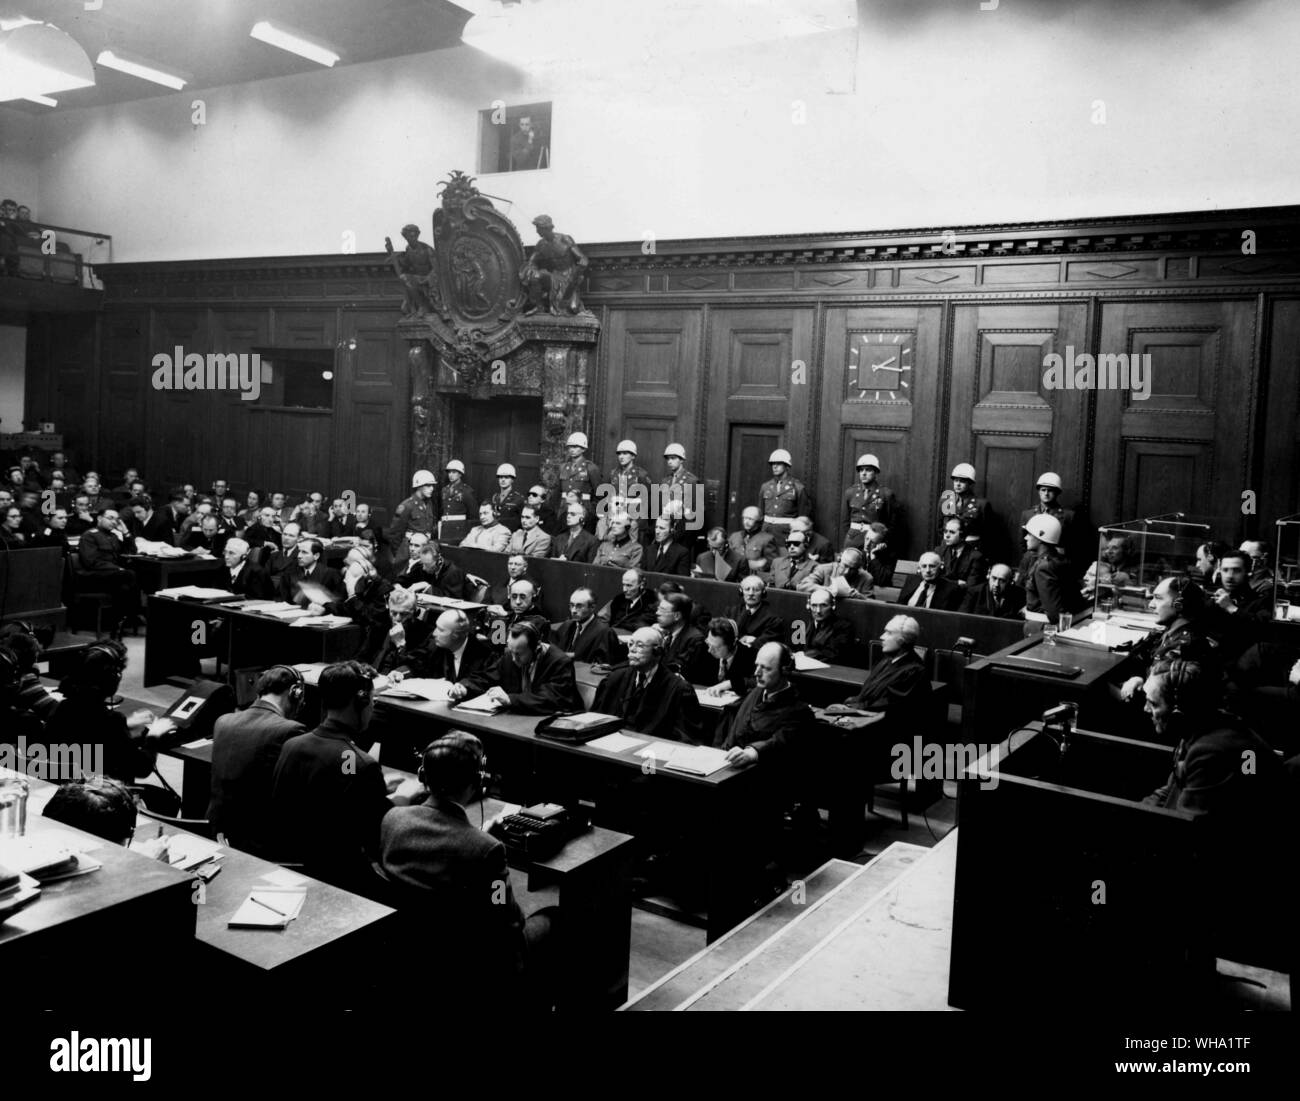 1946 : Les 21 accusés sont tous présents durant le Tribunal militaire international procès à Nuremberg, en Allemagne. L'un des défendeurs, Van Neurath est bloquée par un soldat américain dans la boîte sur l'extrême droite. Banque D'Images